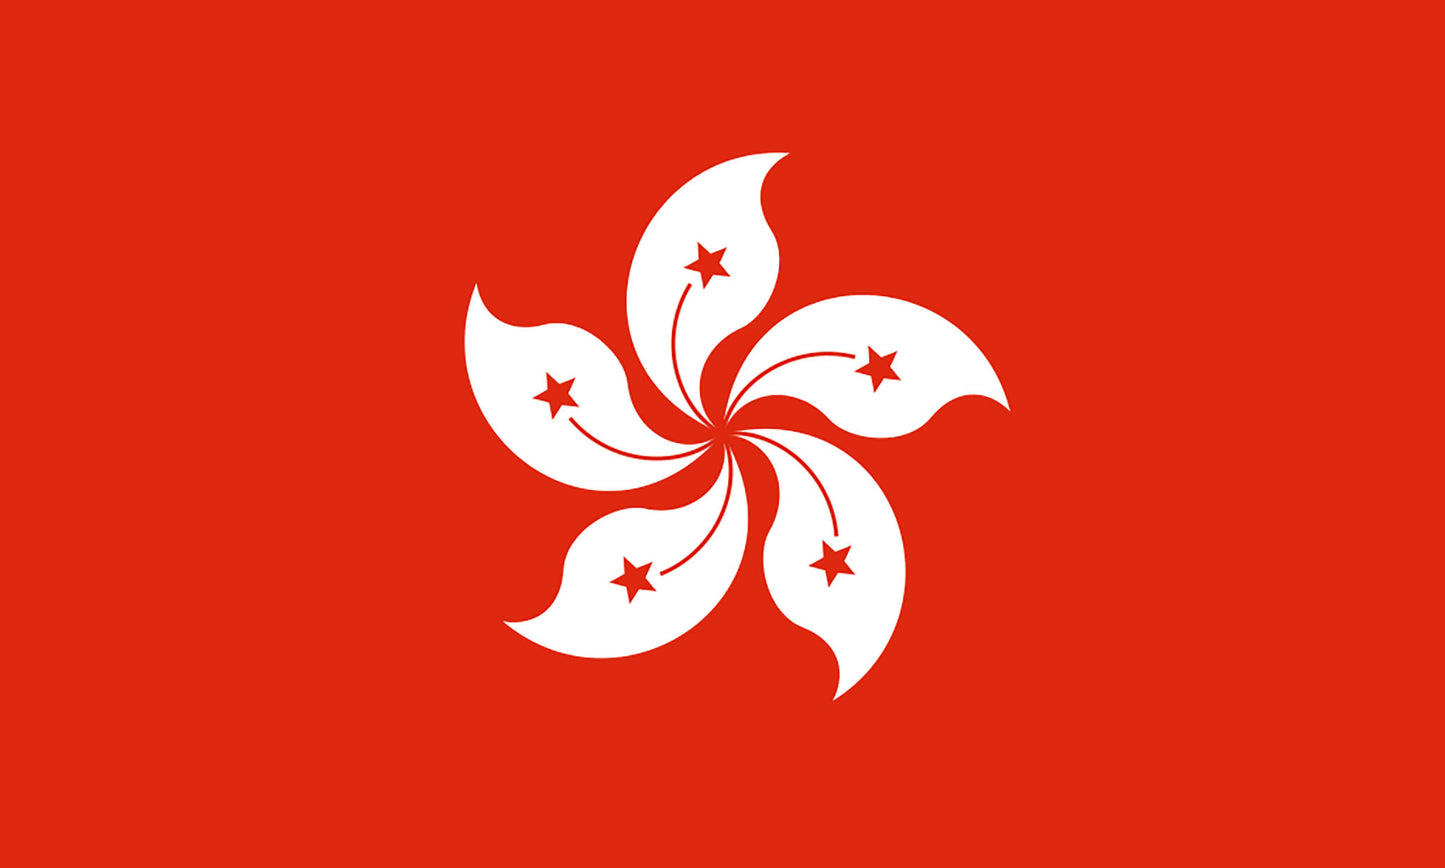 INR-HKG-15x22-2 - государственный флаг Гонконга, размер: 15х22 см, материал: атлас. Печать с двух сторон. Подставка и шток приобретаются отдельно